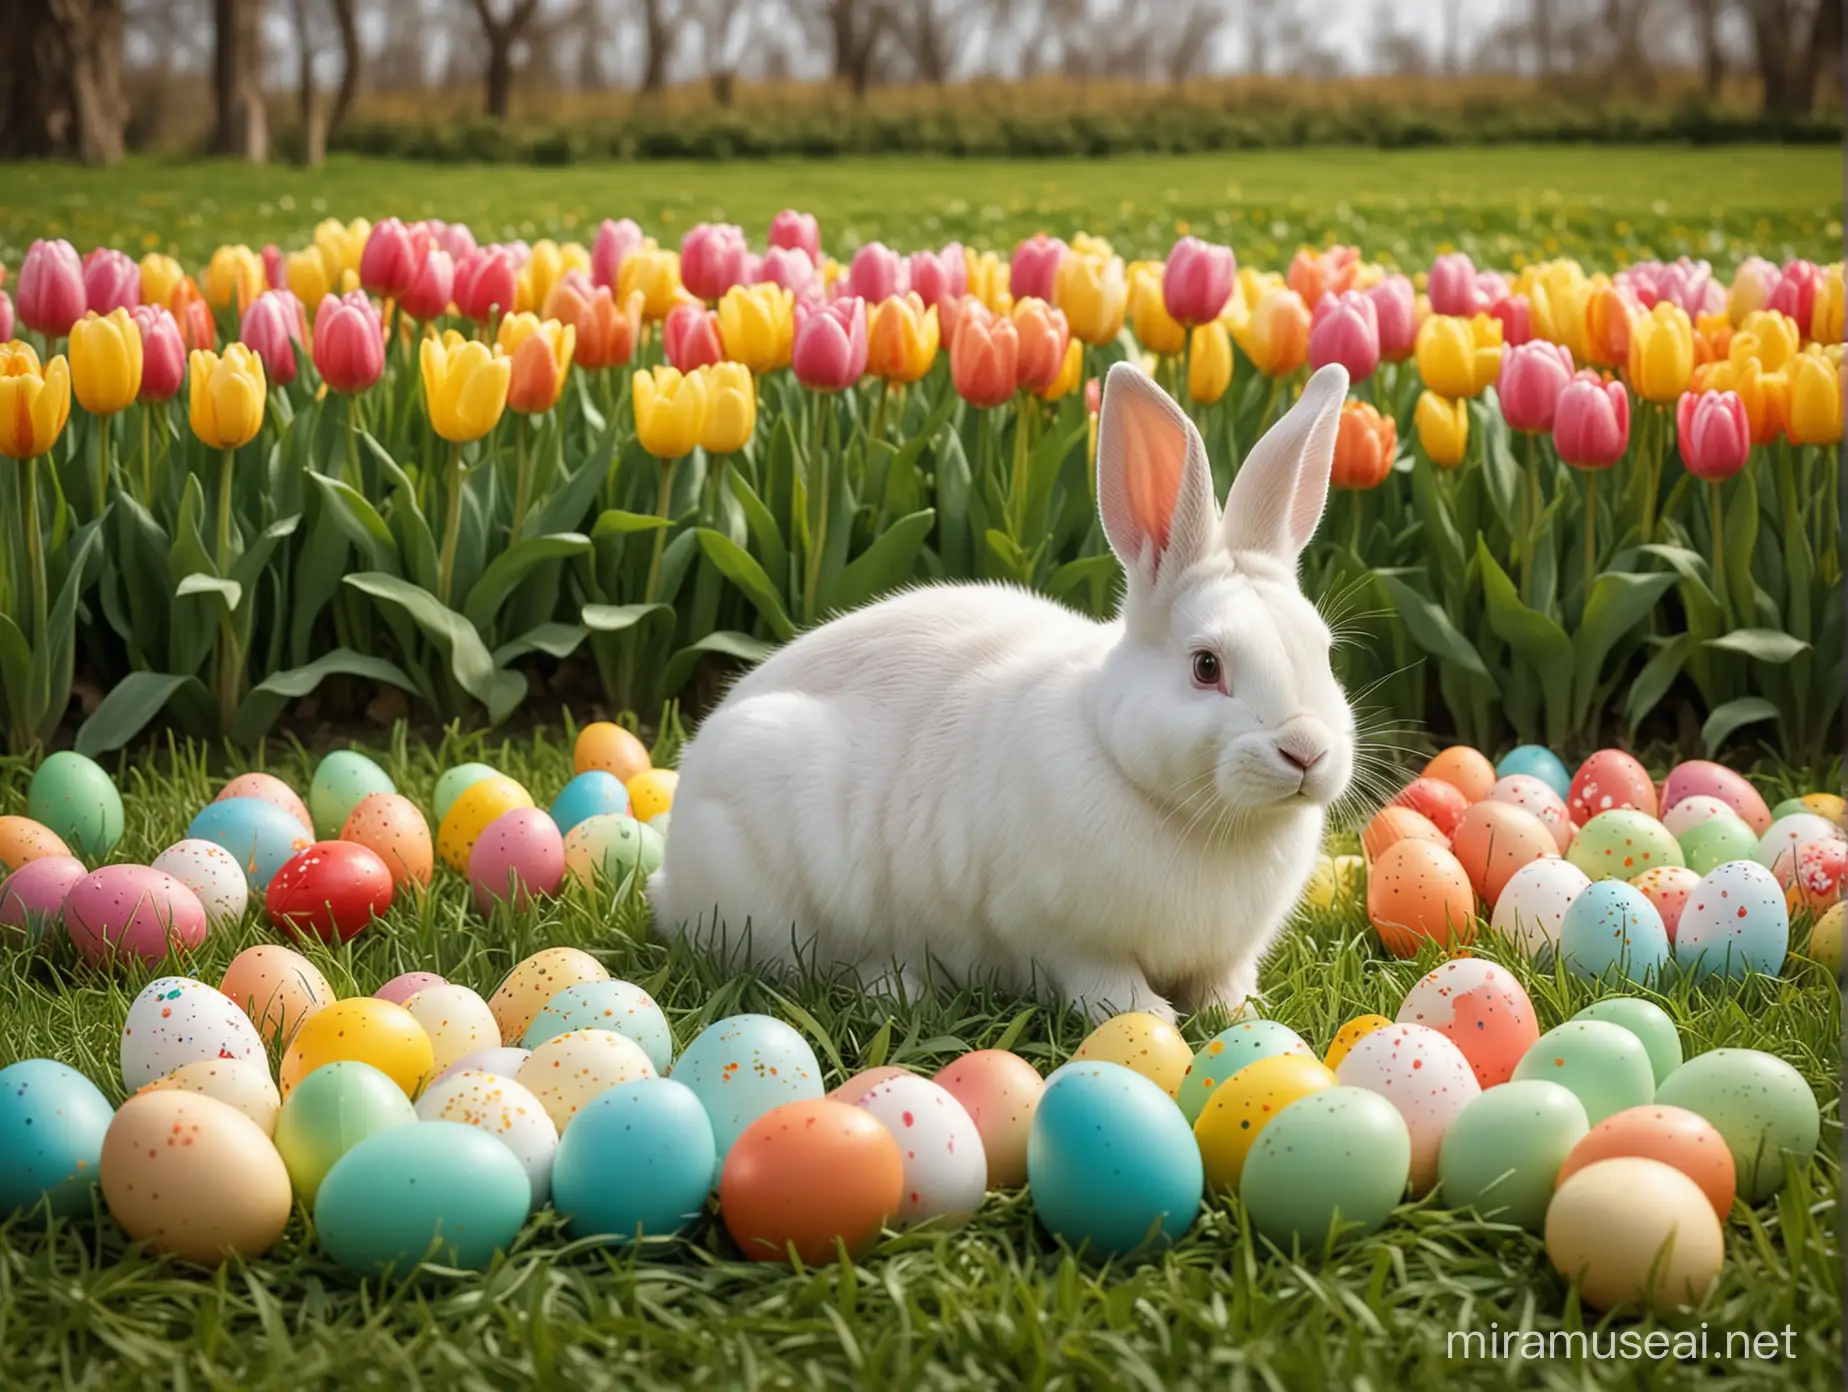 Fehér nyuszi ül a fűben, körülötte színes húsvéti tojások, tulipánok, a háttérben zöld mező, realisztikus fotó